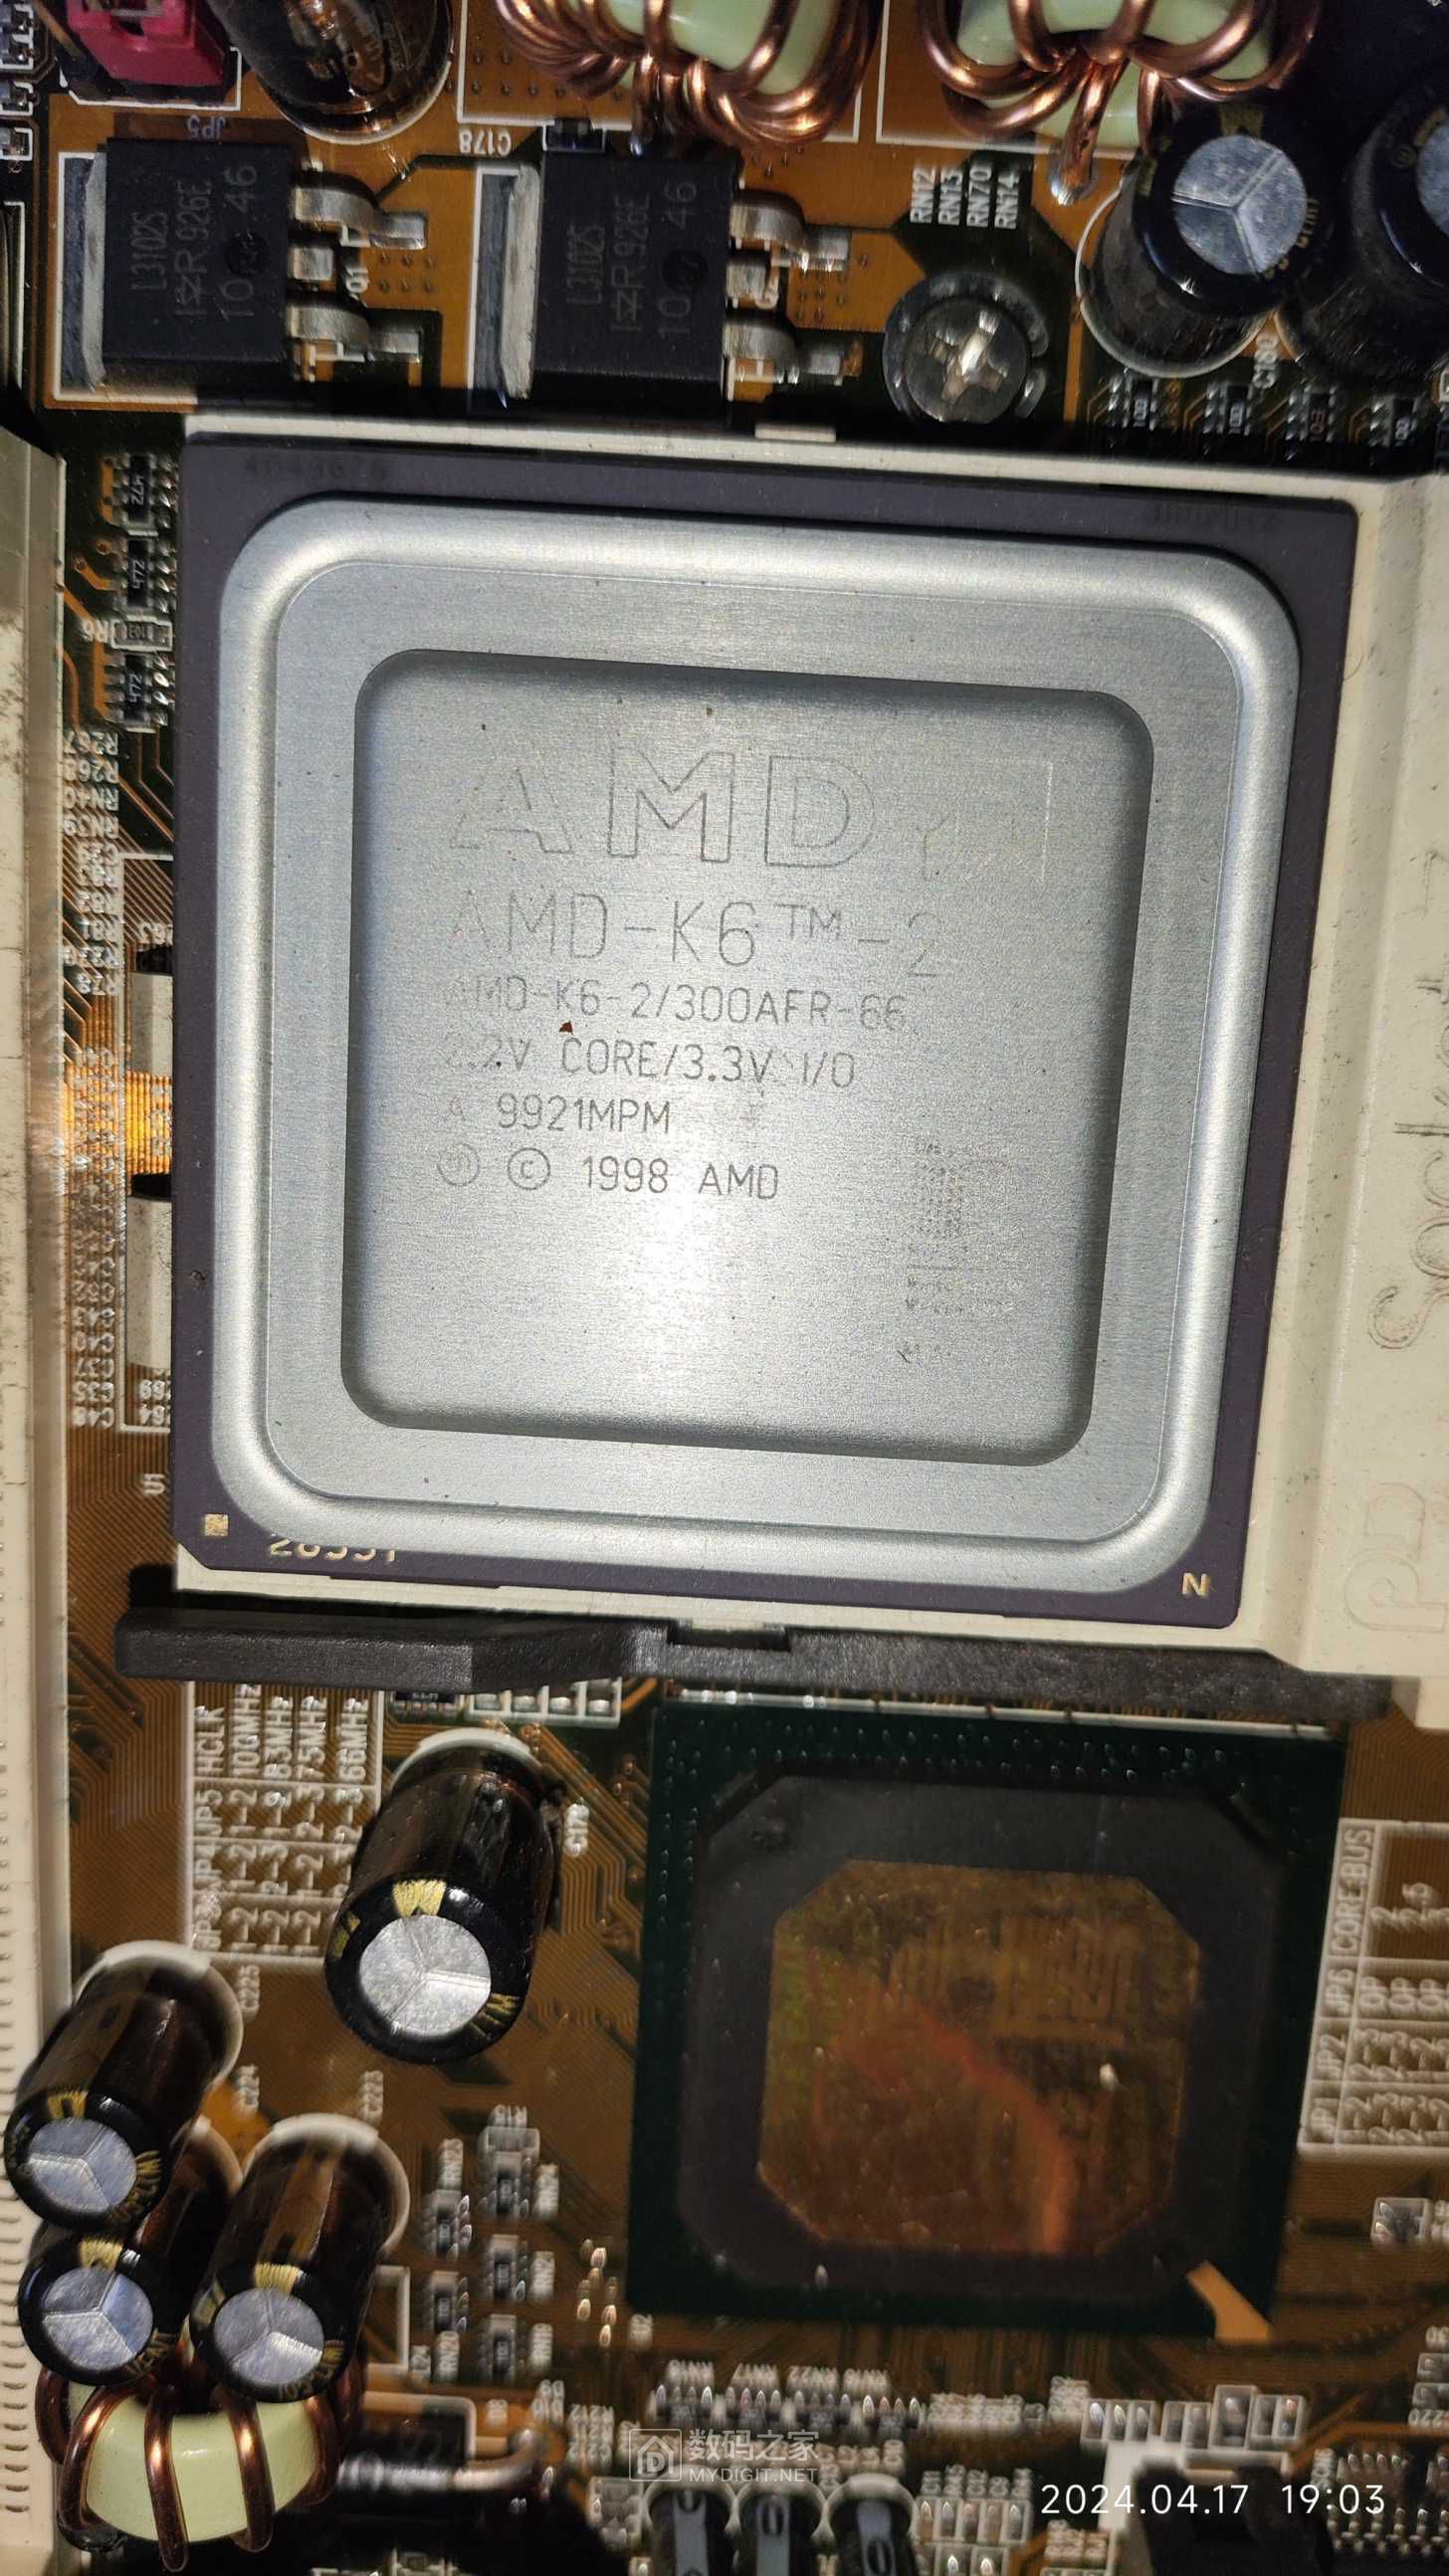 AMD-K6-2/300AFR-66